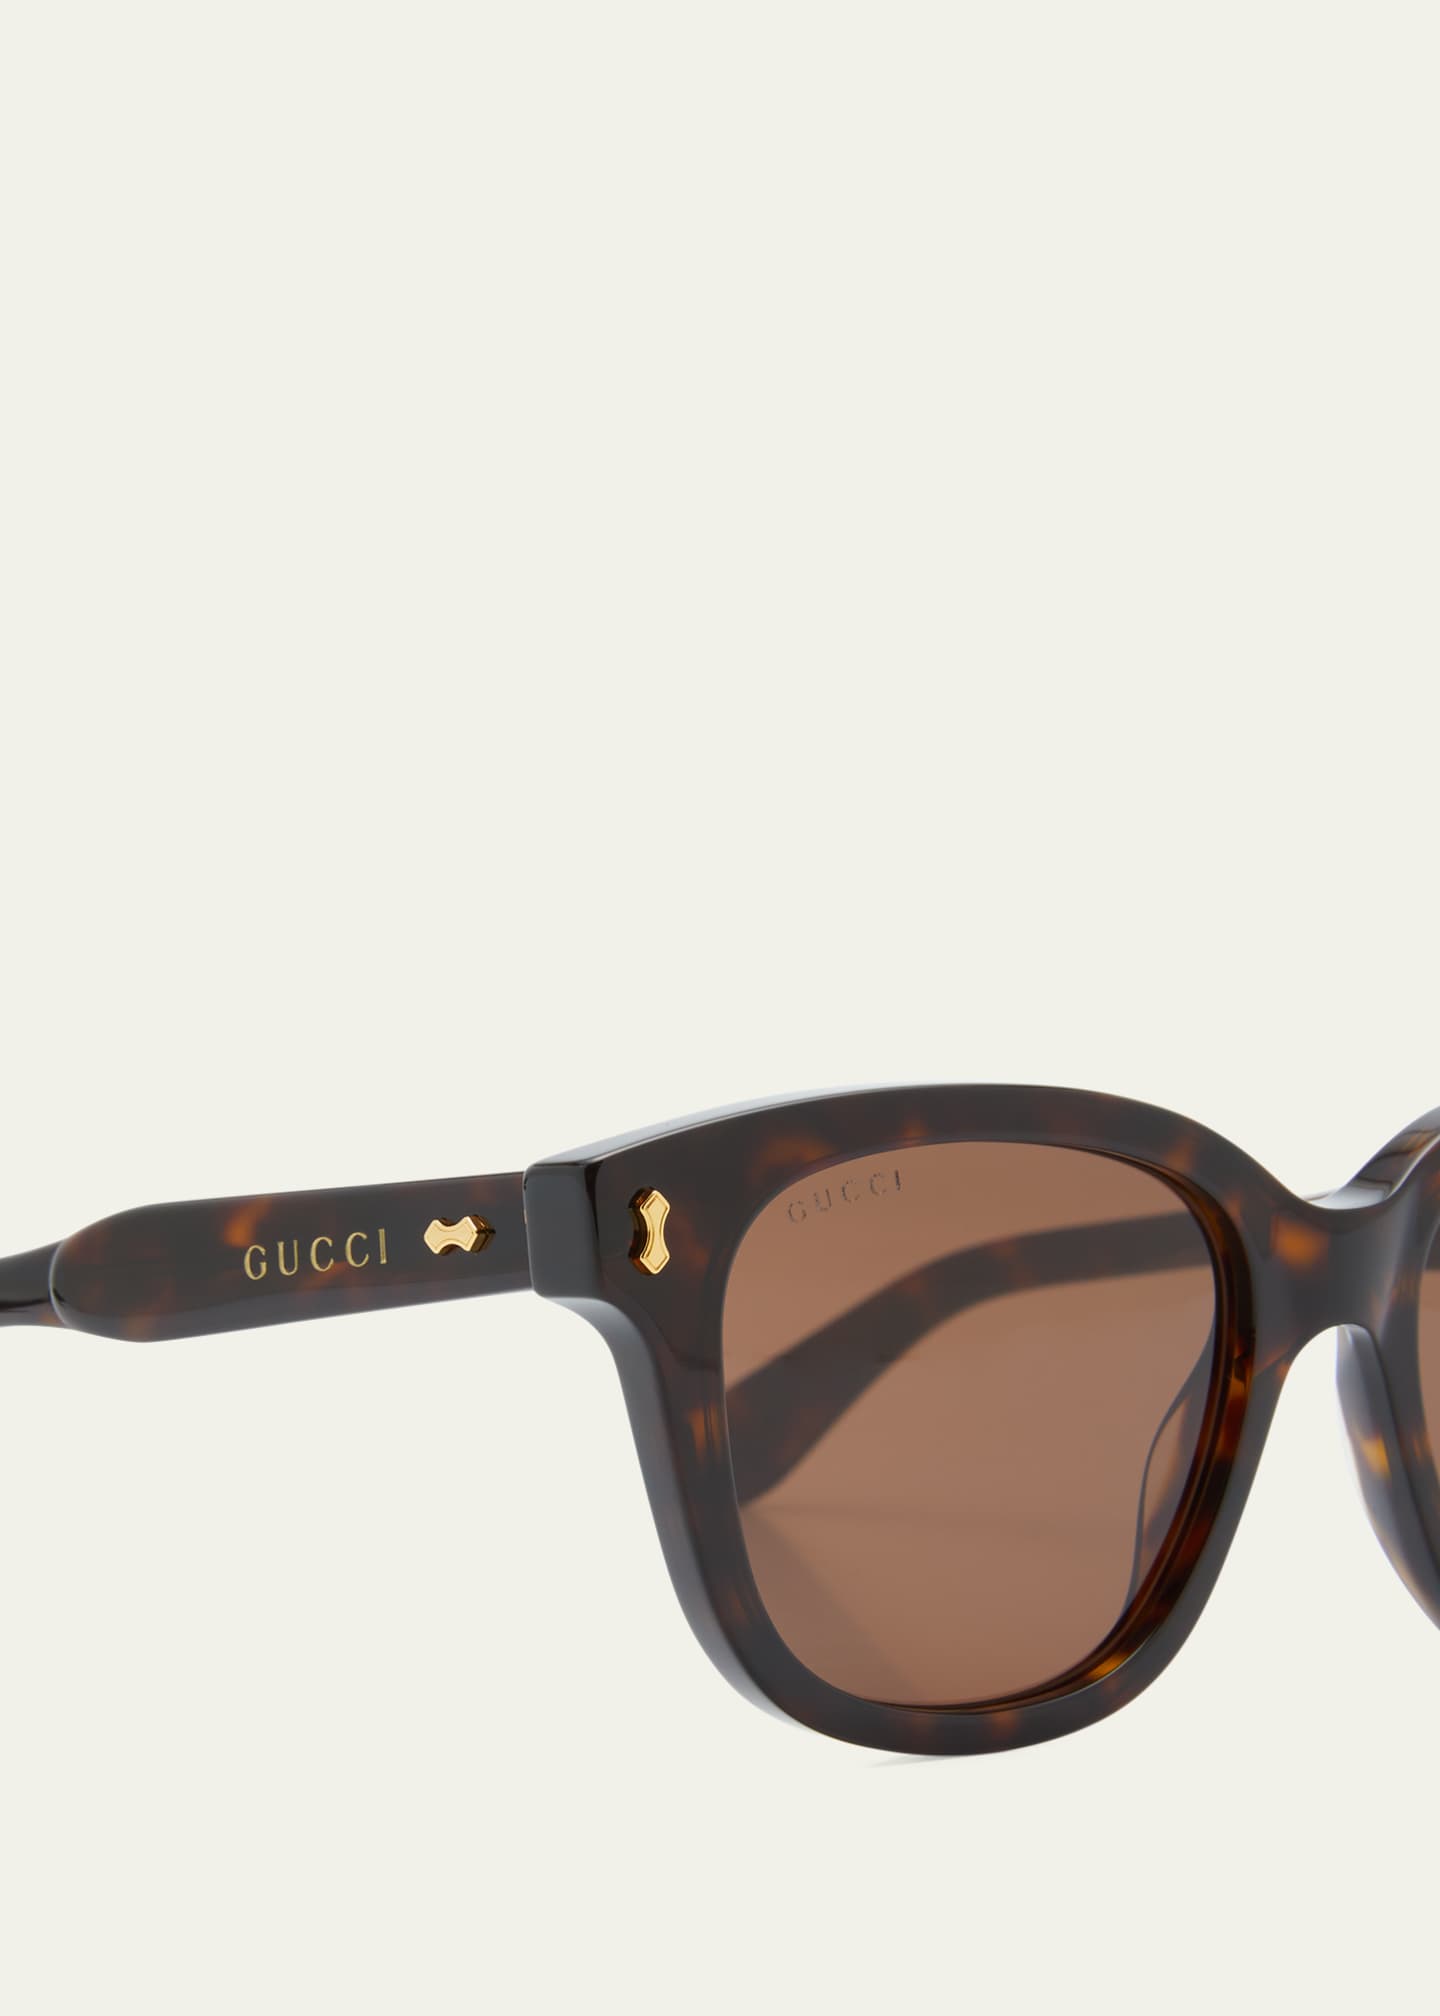 Gucci Men's Temple-Logo Rectangle Sunglasses Shiny Black